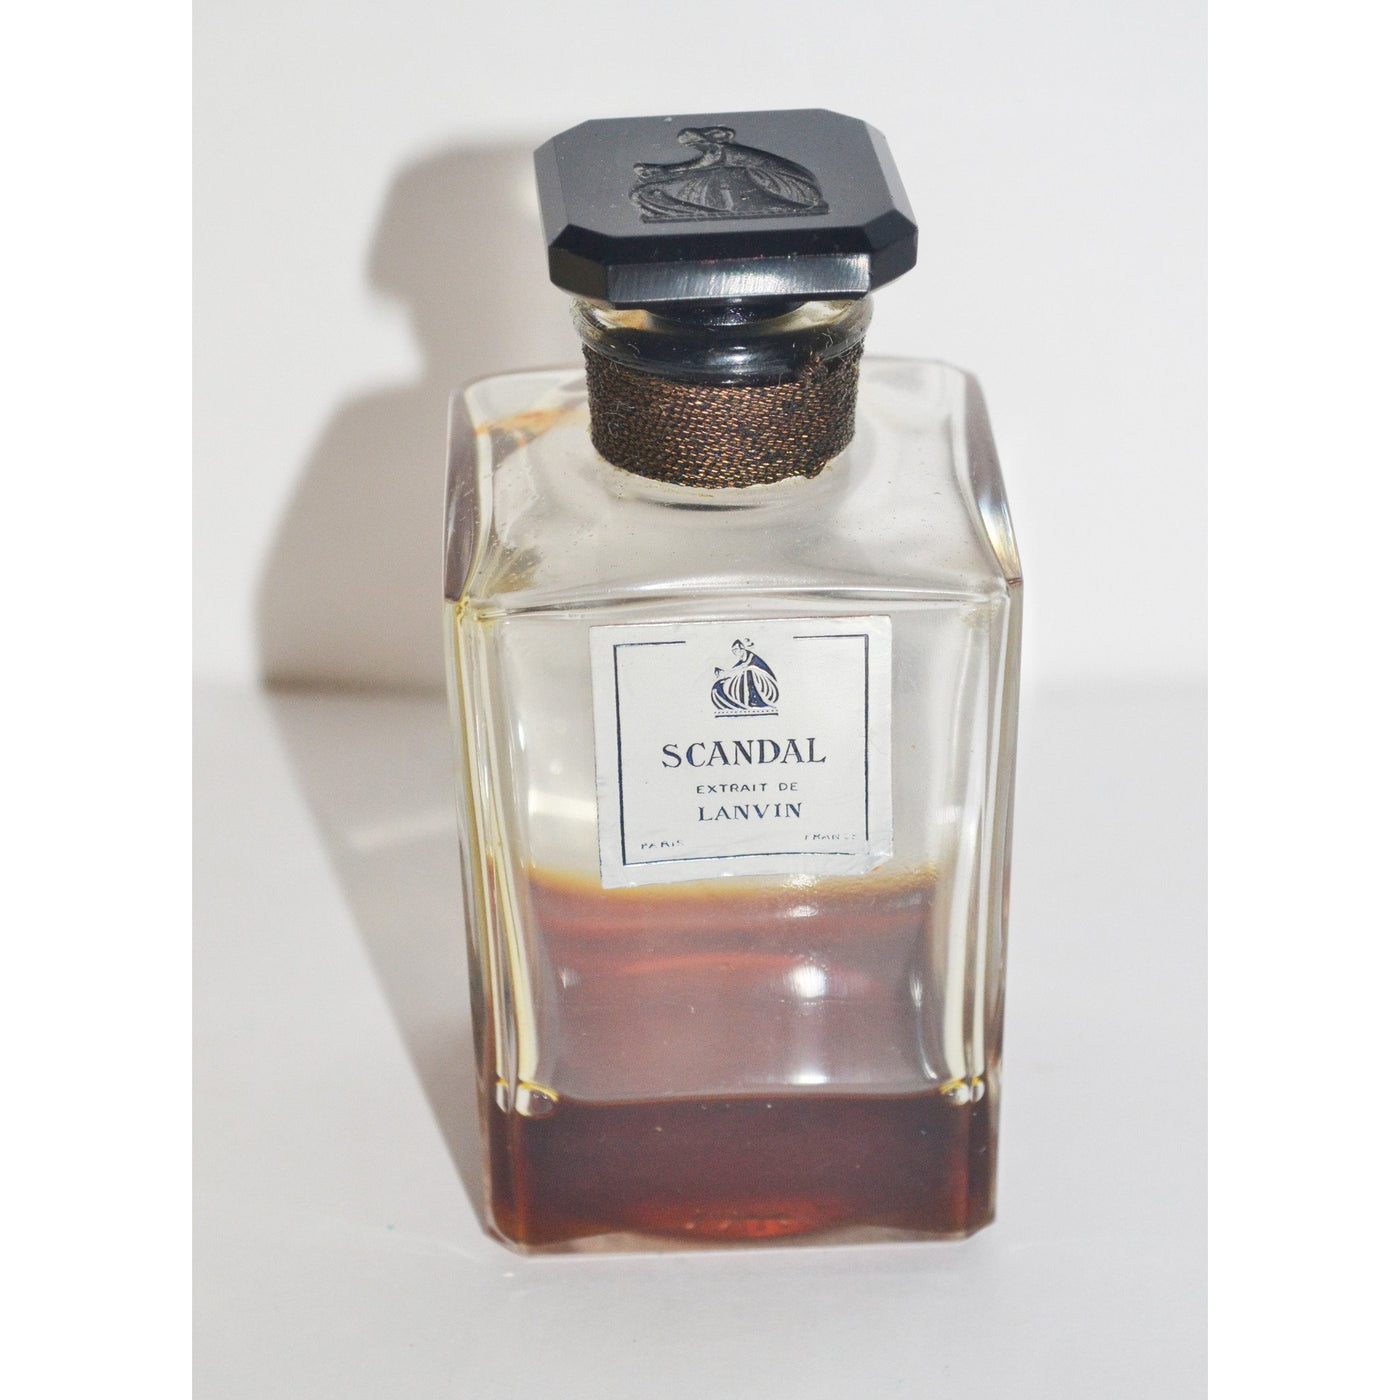 Vintage Lanvin Scandal Perfume Extrait